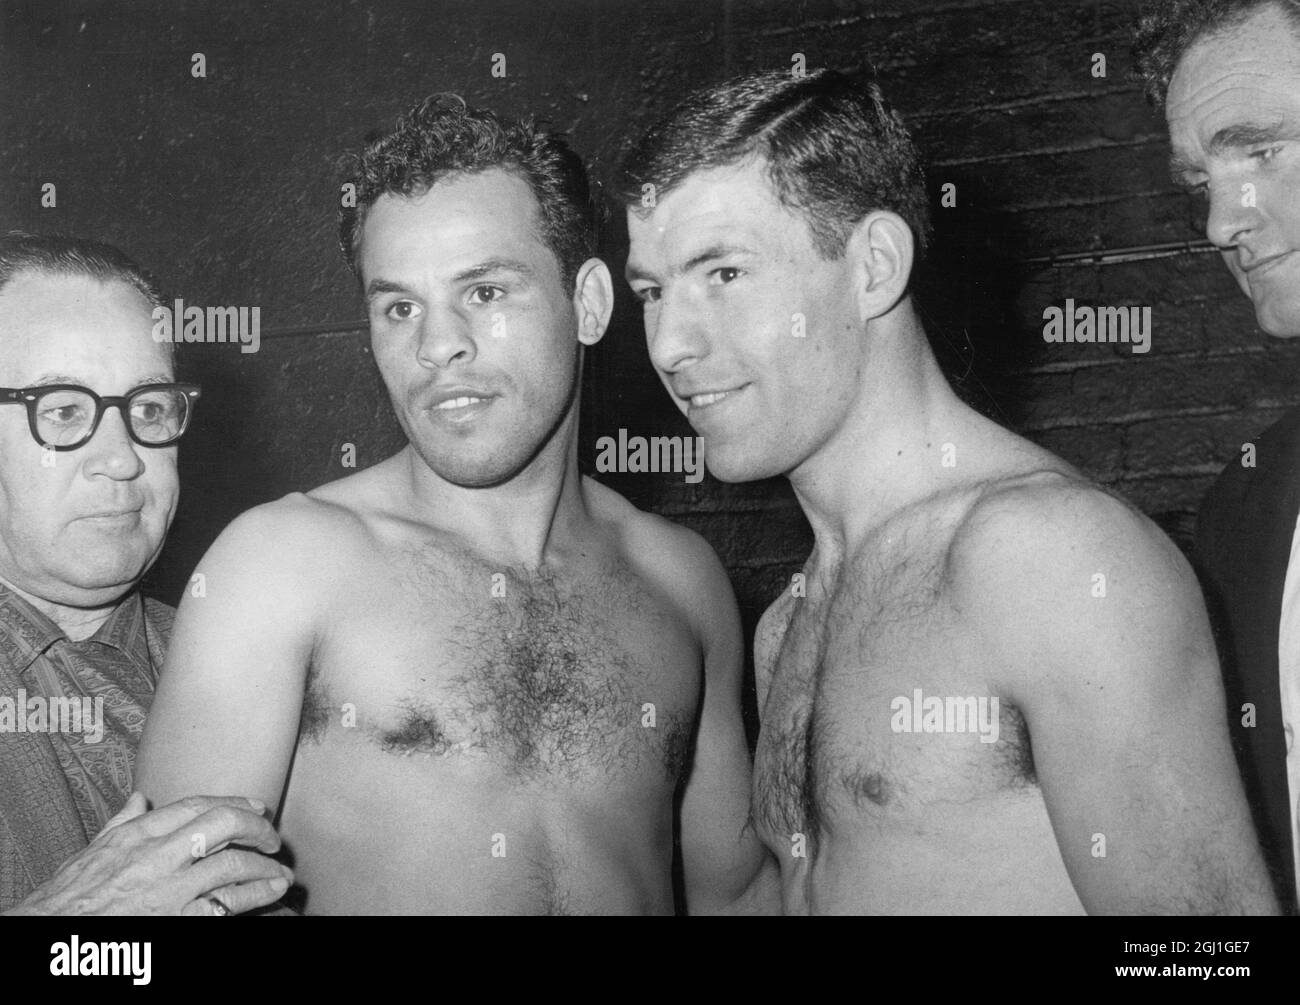 Brian Curvis boxer de Swansea, Gales y Ralph Dupas boxer de Nueva Orleans EE.UU. (Izquierda) visto en el peso antes del Campeonato Mundial de peso welter Wembley Londres 1962 de septiembre Foto de stock